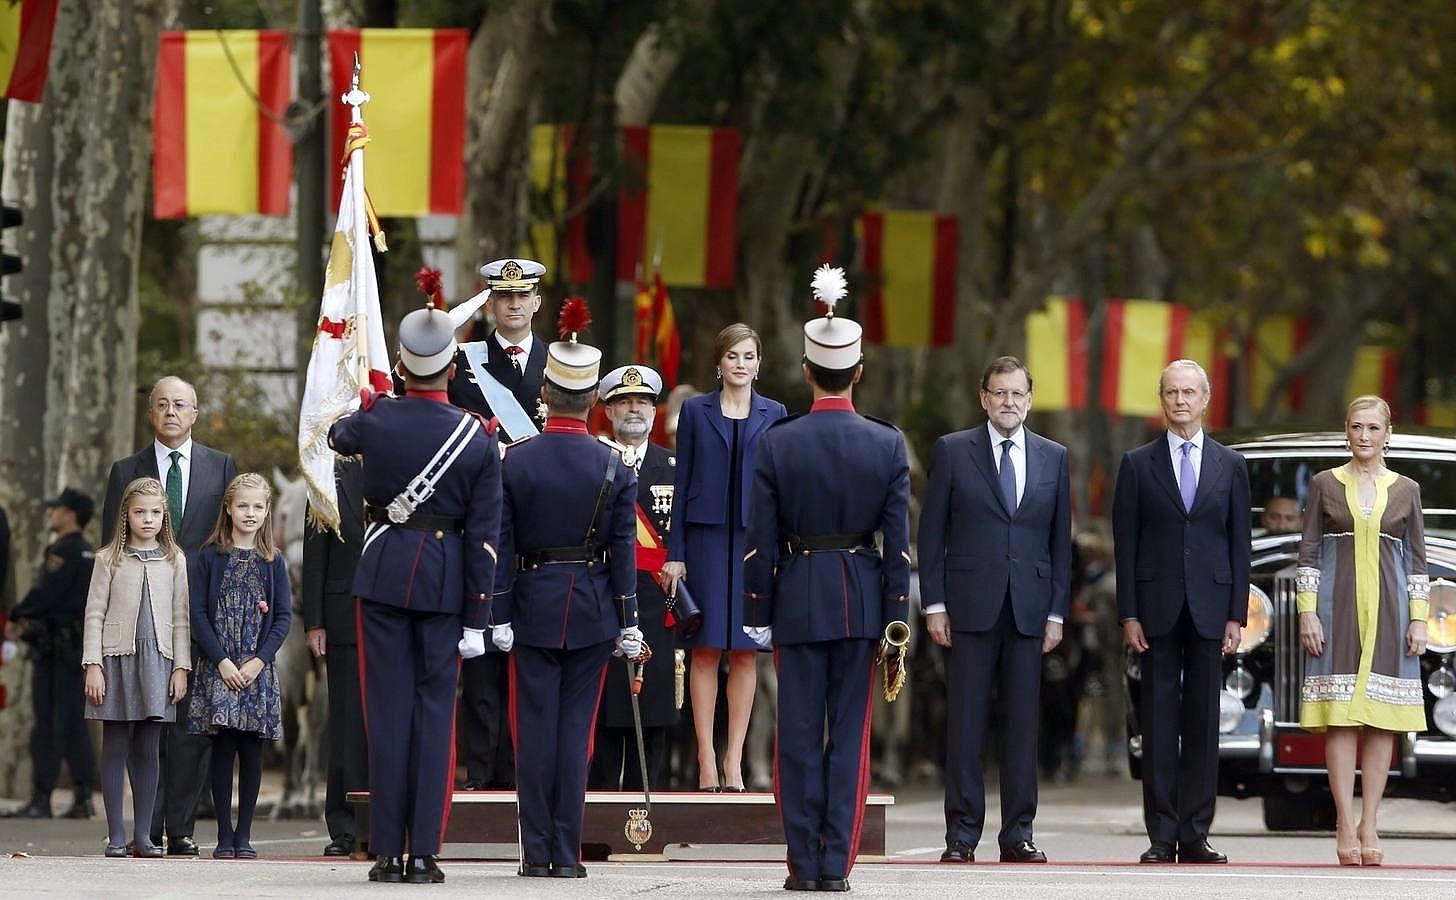 Los Reyes Felipe y Letizia, acompañados por sus hijas la Princesa Leonor y la Infanta Sofía, presiden junto a Mariano Rajoy el desfile del Día de la Fiesta Nacional